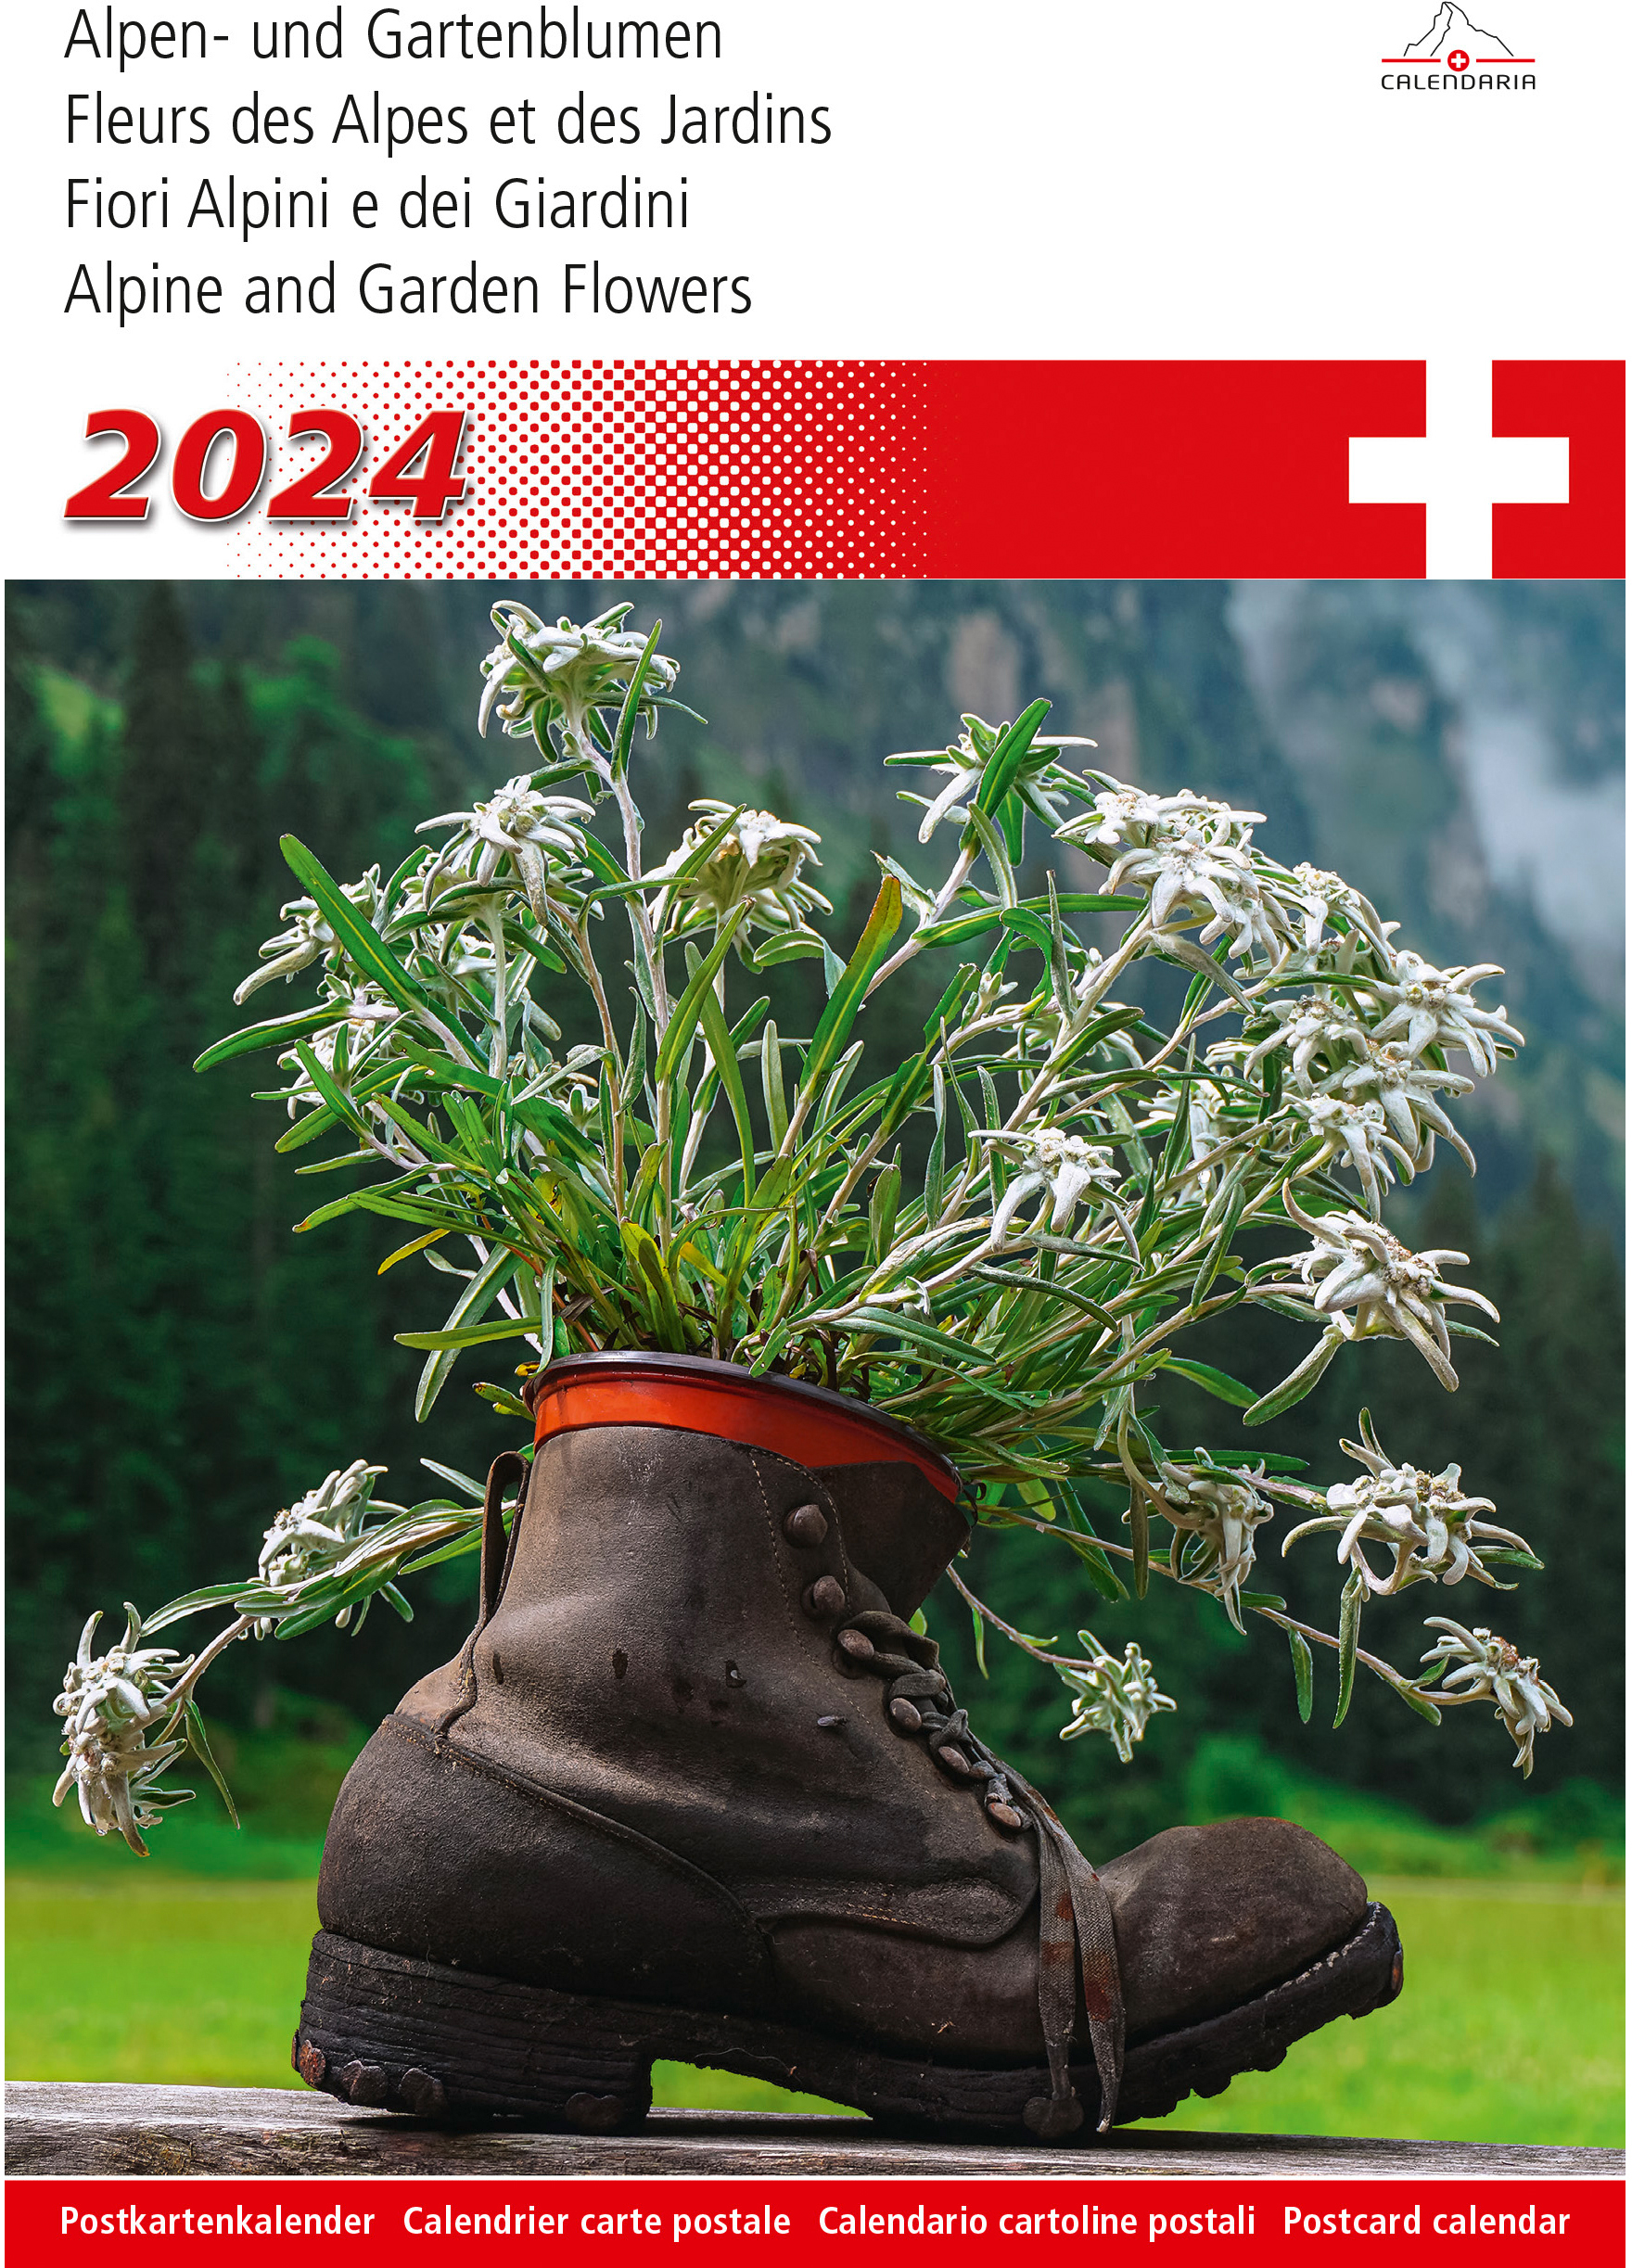 CALENDARIA Alpen- und Gartenblumen 2024 43494632 D/F/I/E 14.8x22cm